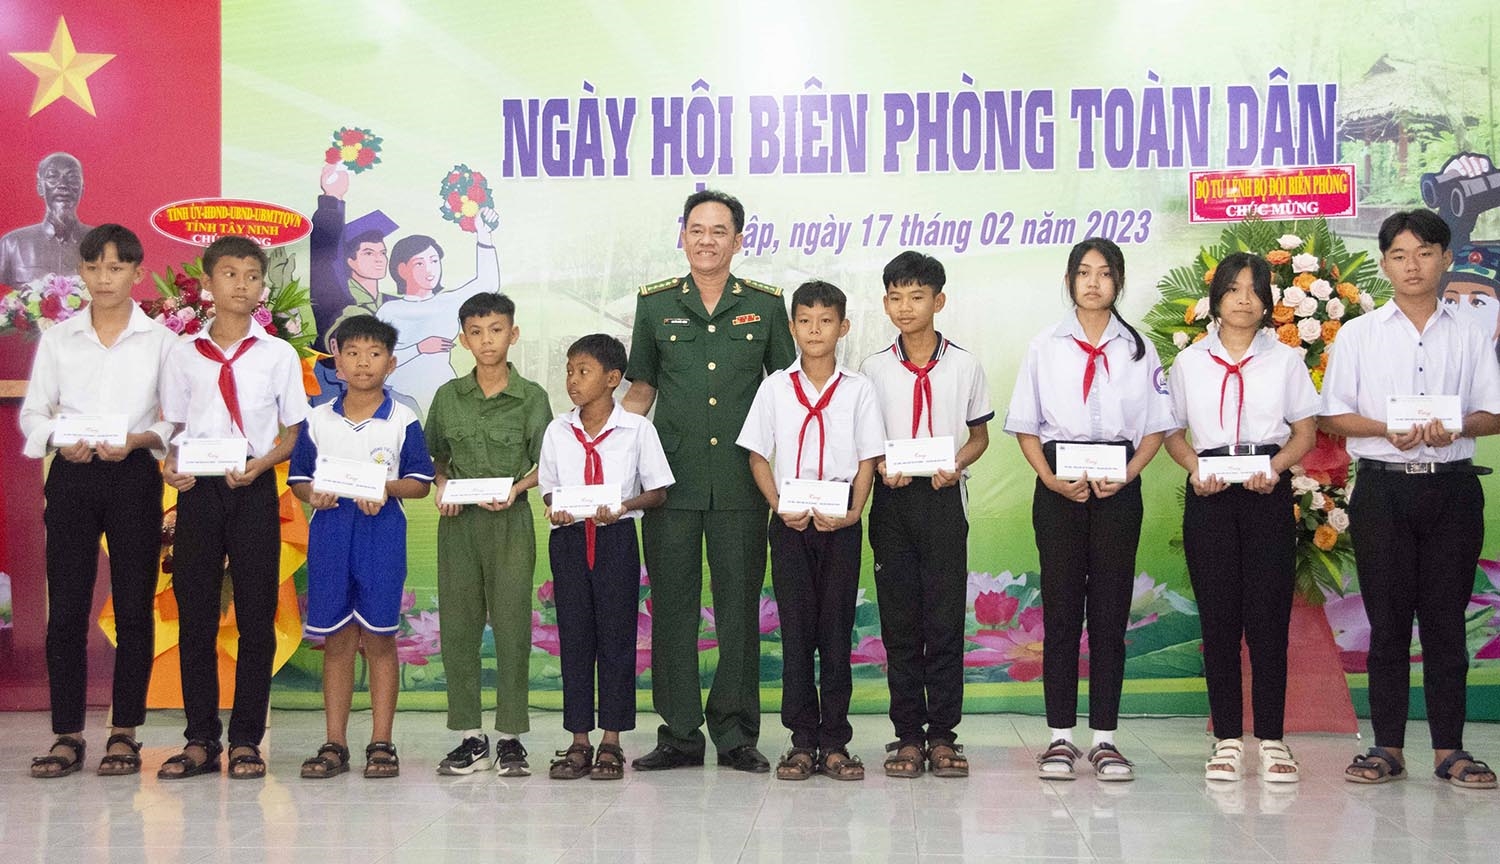 Đại tá Nguyễn Quốc Cường - Phó Chủ nhiệm Chính trị BĐBP trao học bổng cho các học sinh nghèo vượt khó 